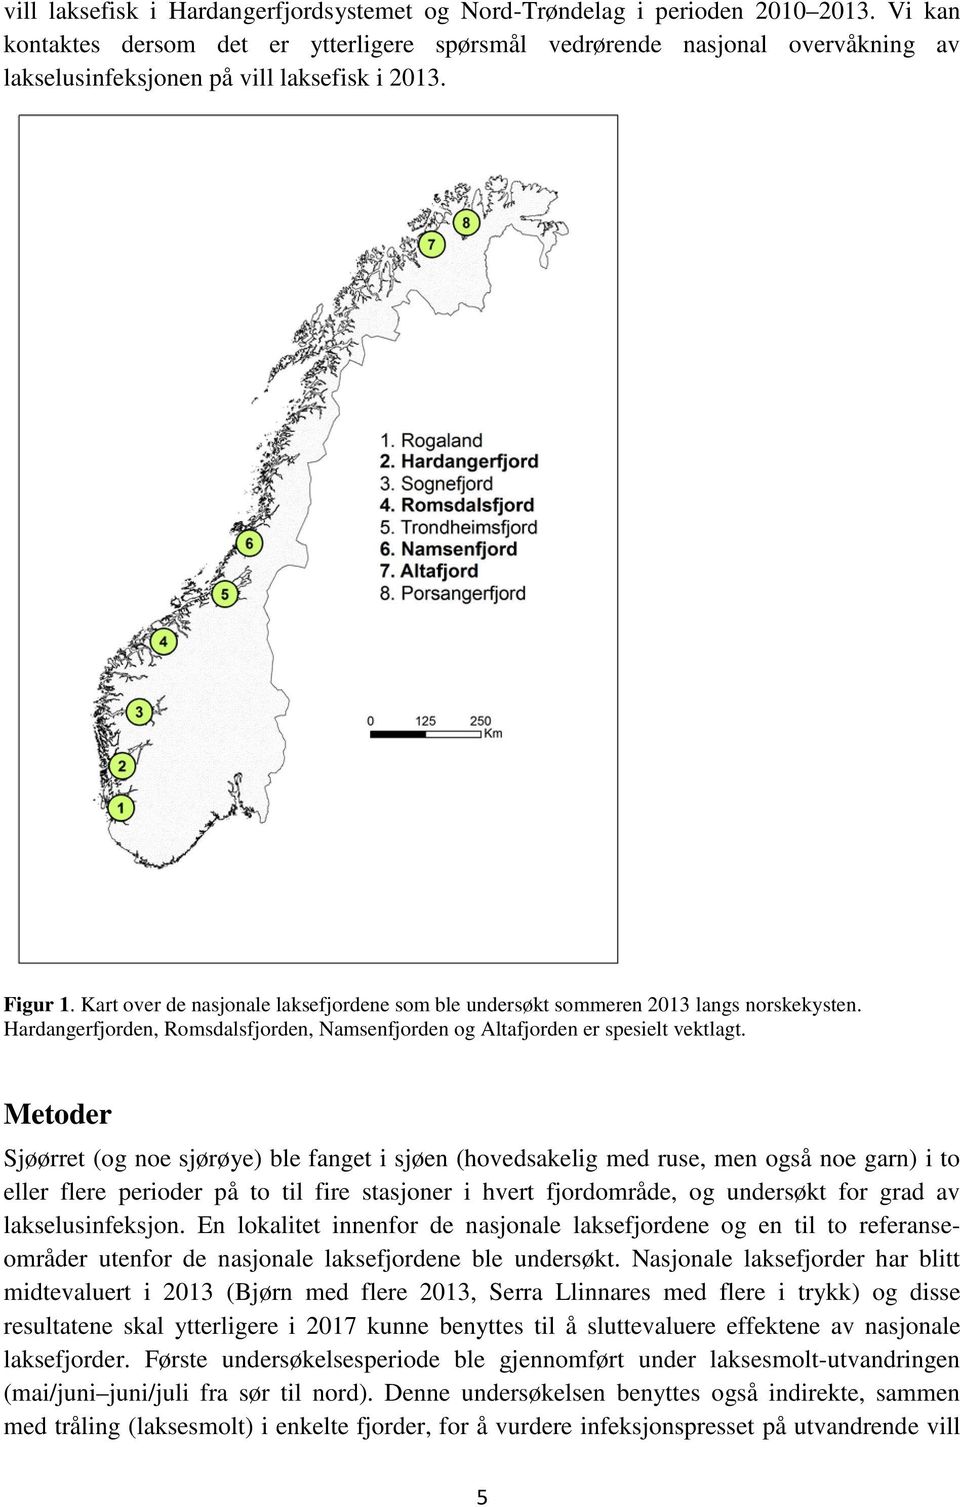 Kart over de nasjonale laksefjordene som ble undersøkt sommeren 2013 langs norskekysten. Hardangerfjorden, Romsdalsfjorden, Namsenfjorden og Altafjorden er spesielt vektlagt.